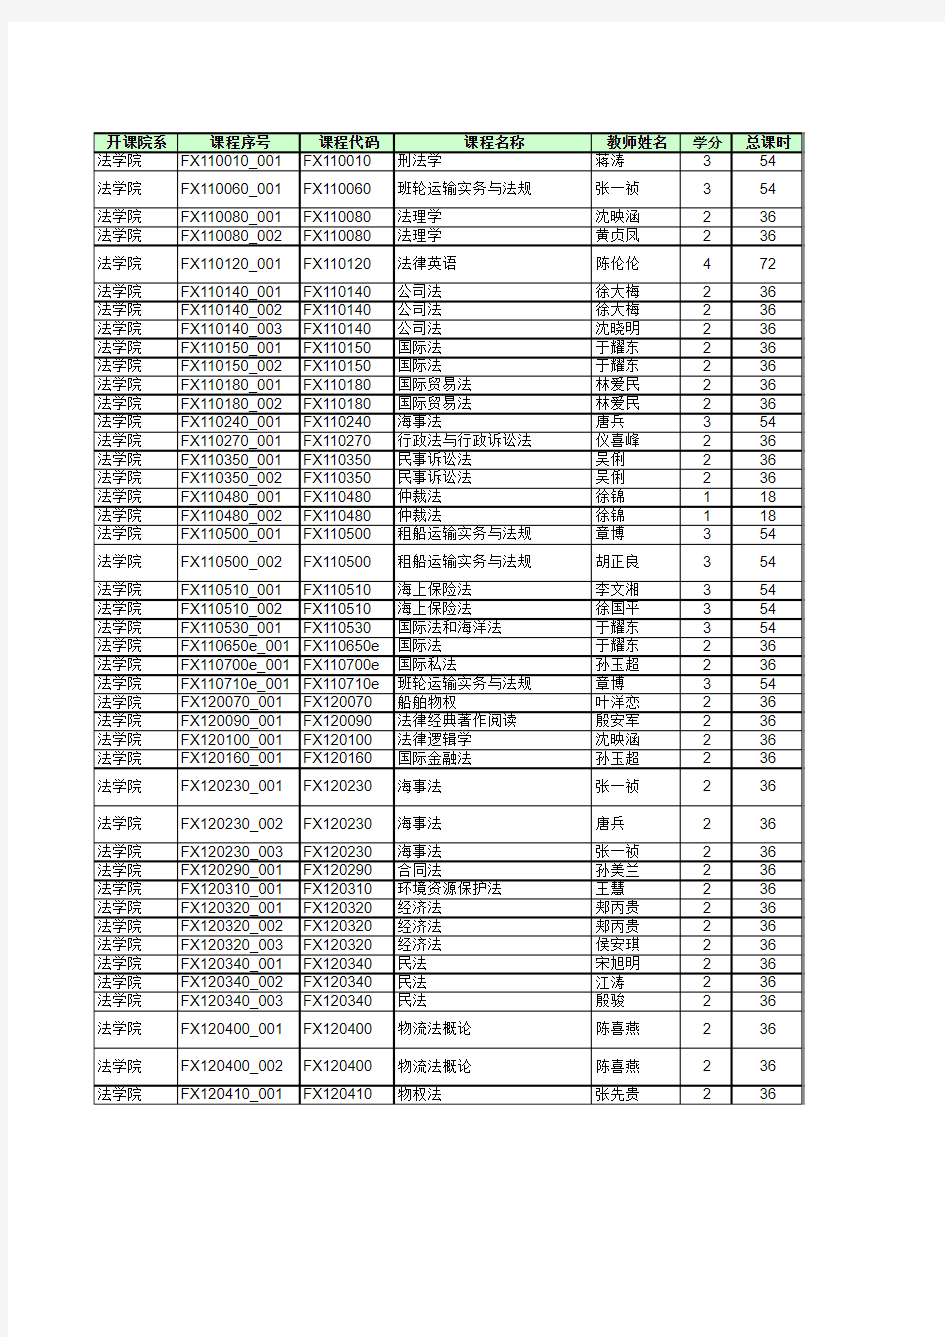 上海海事大学2015-2016第二学期课表